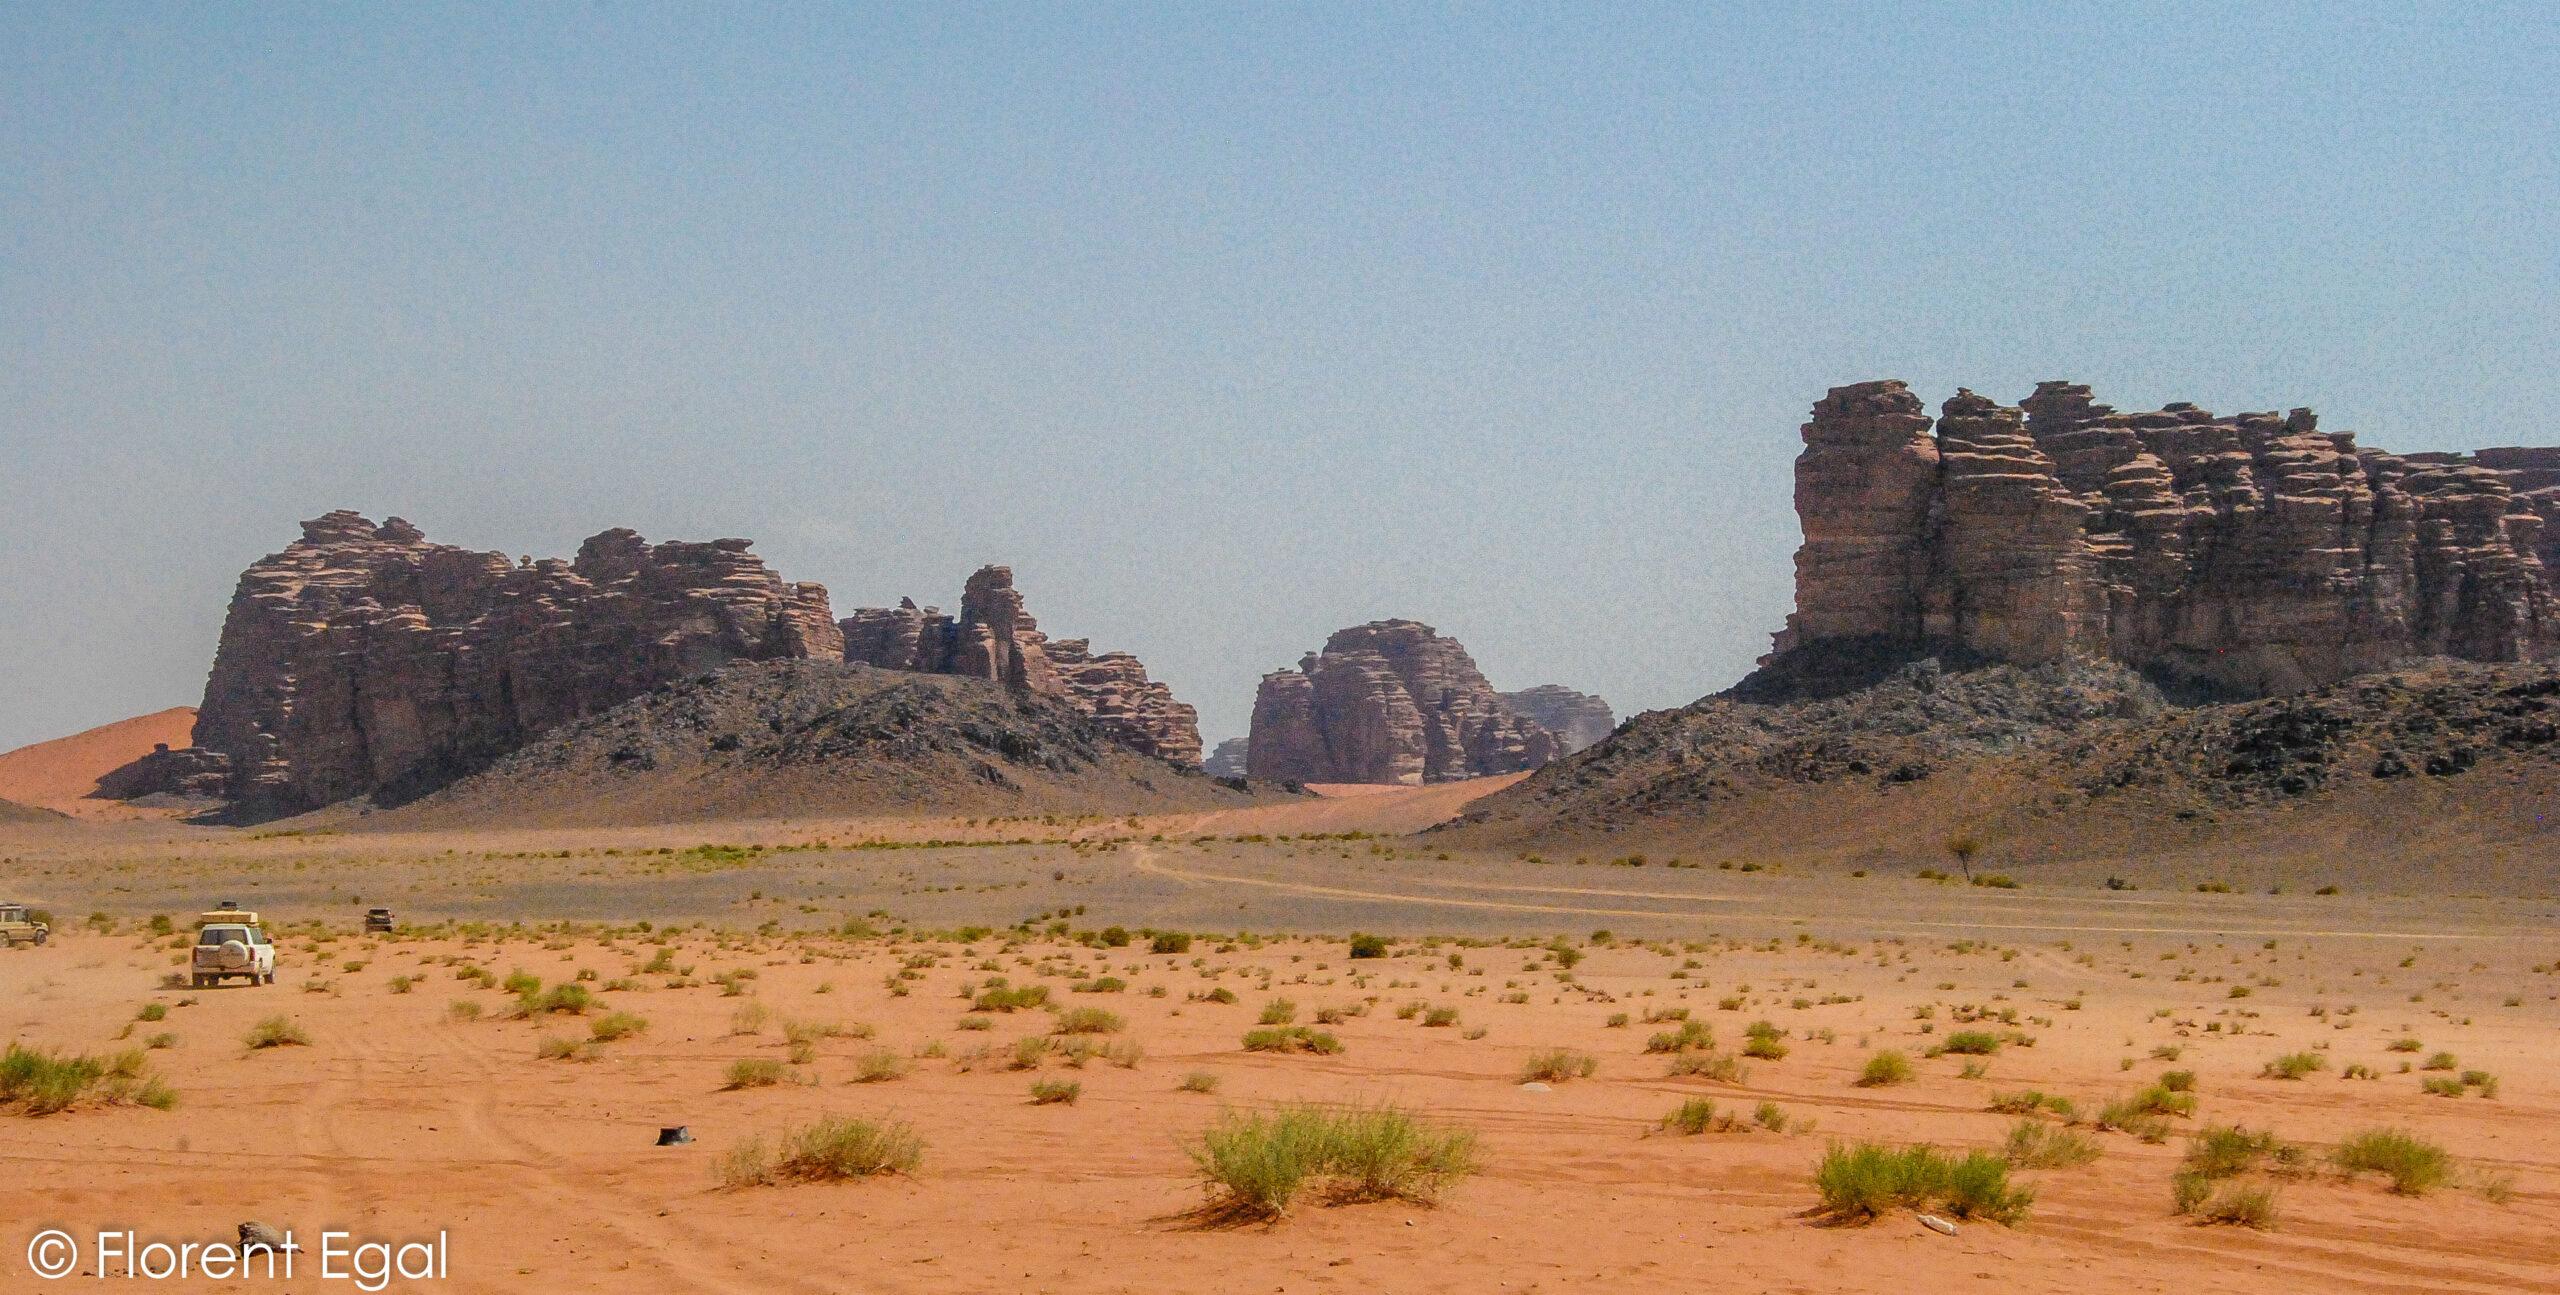 Saudiarabien: Vad kan man se och förvänta sig i landet med öken och klippor?